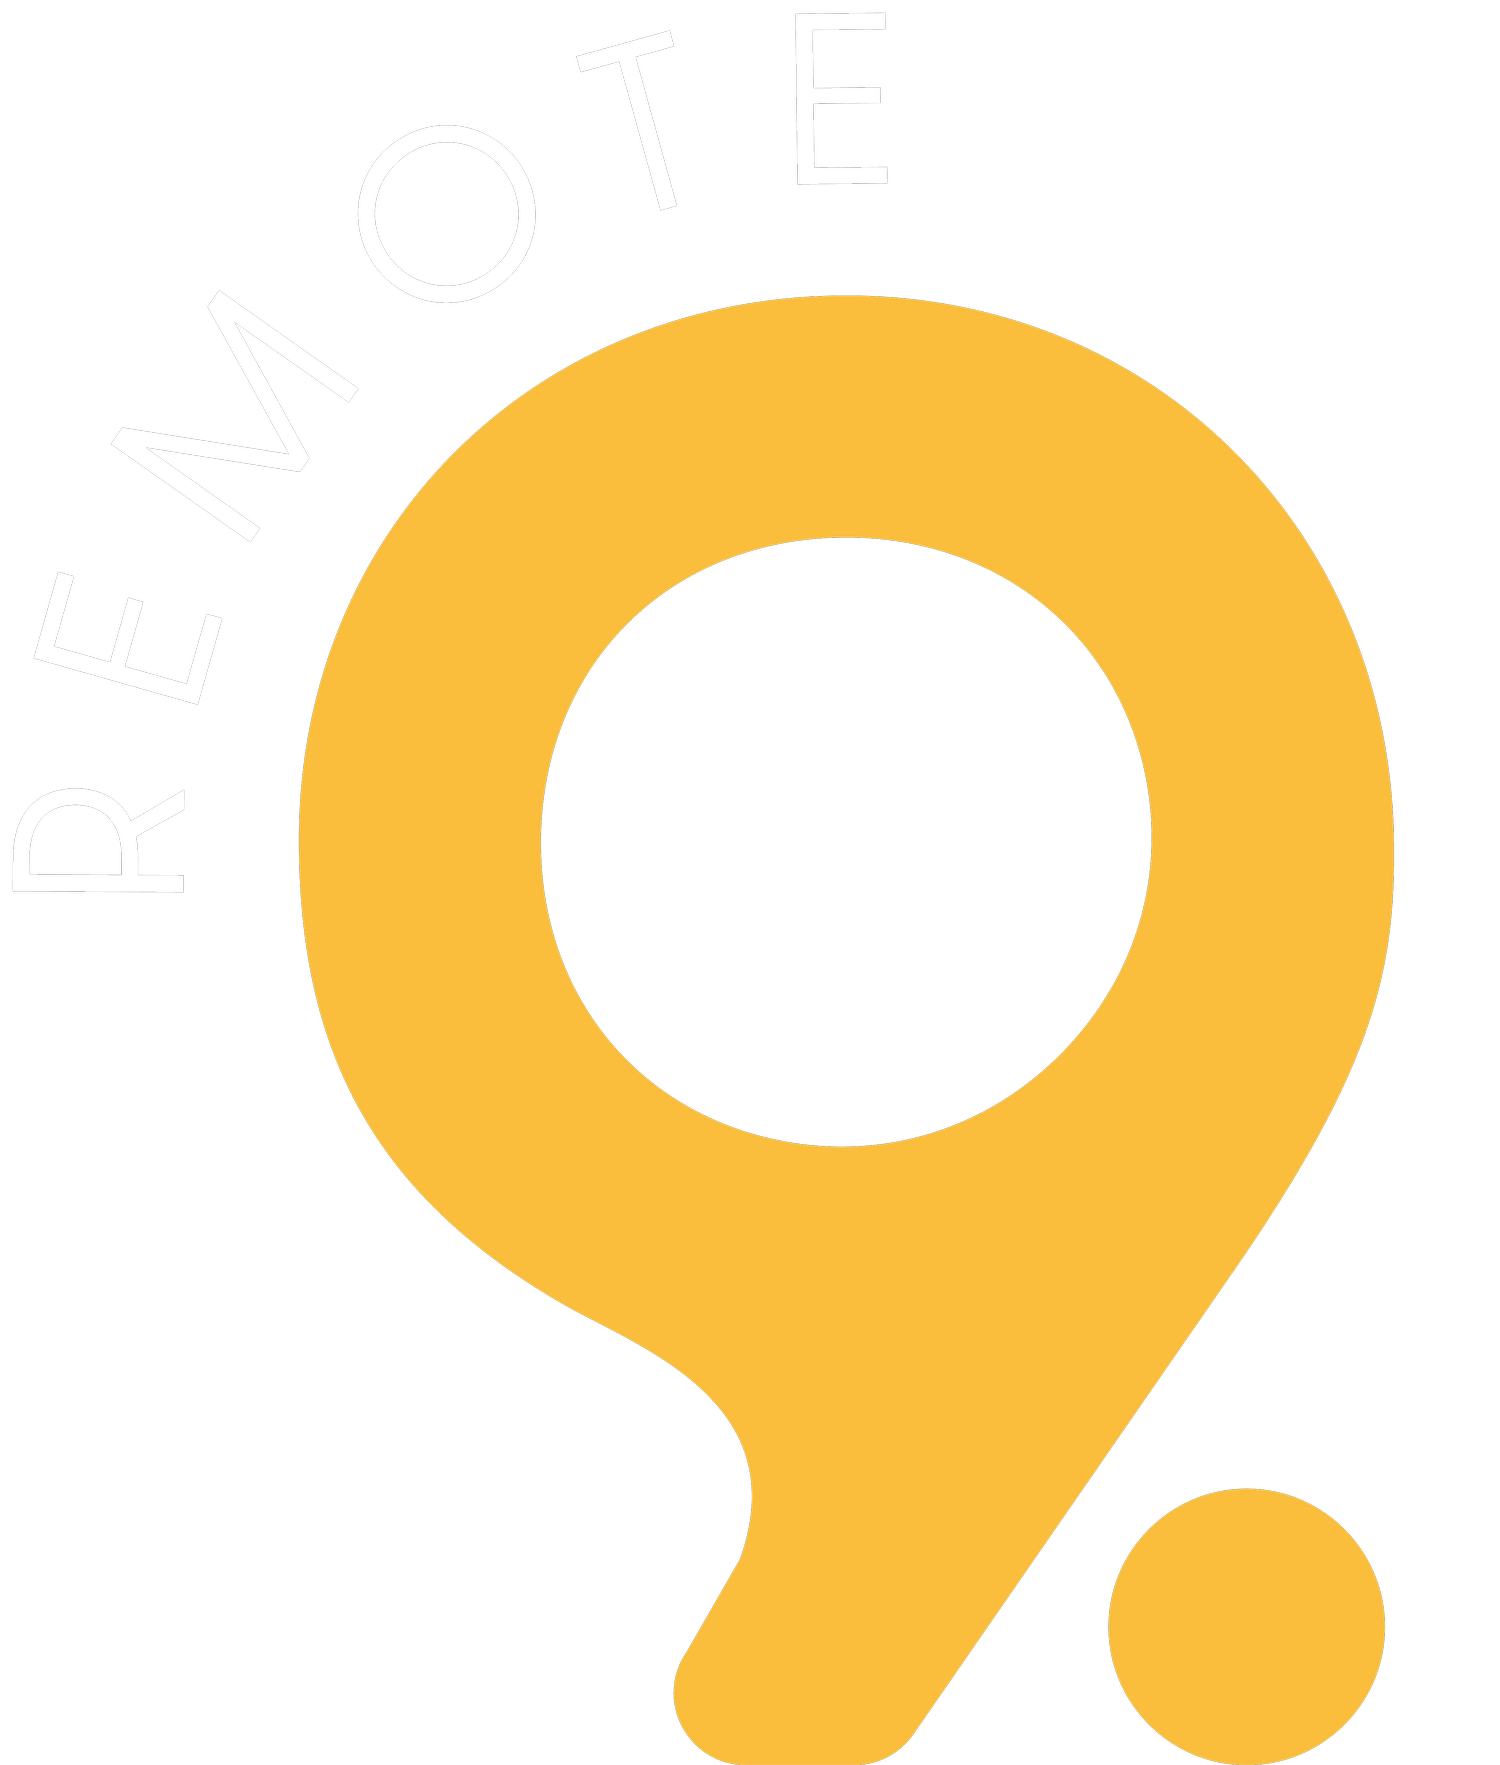 Remote 9